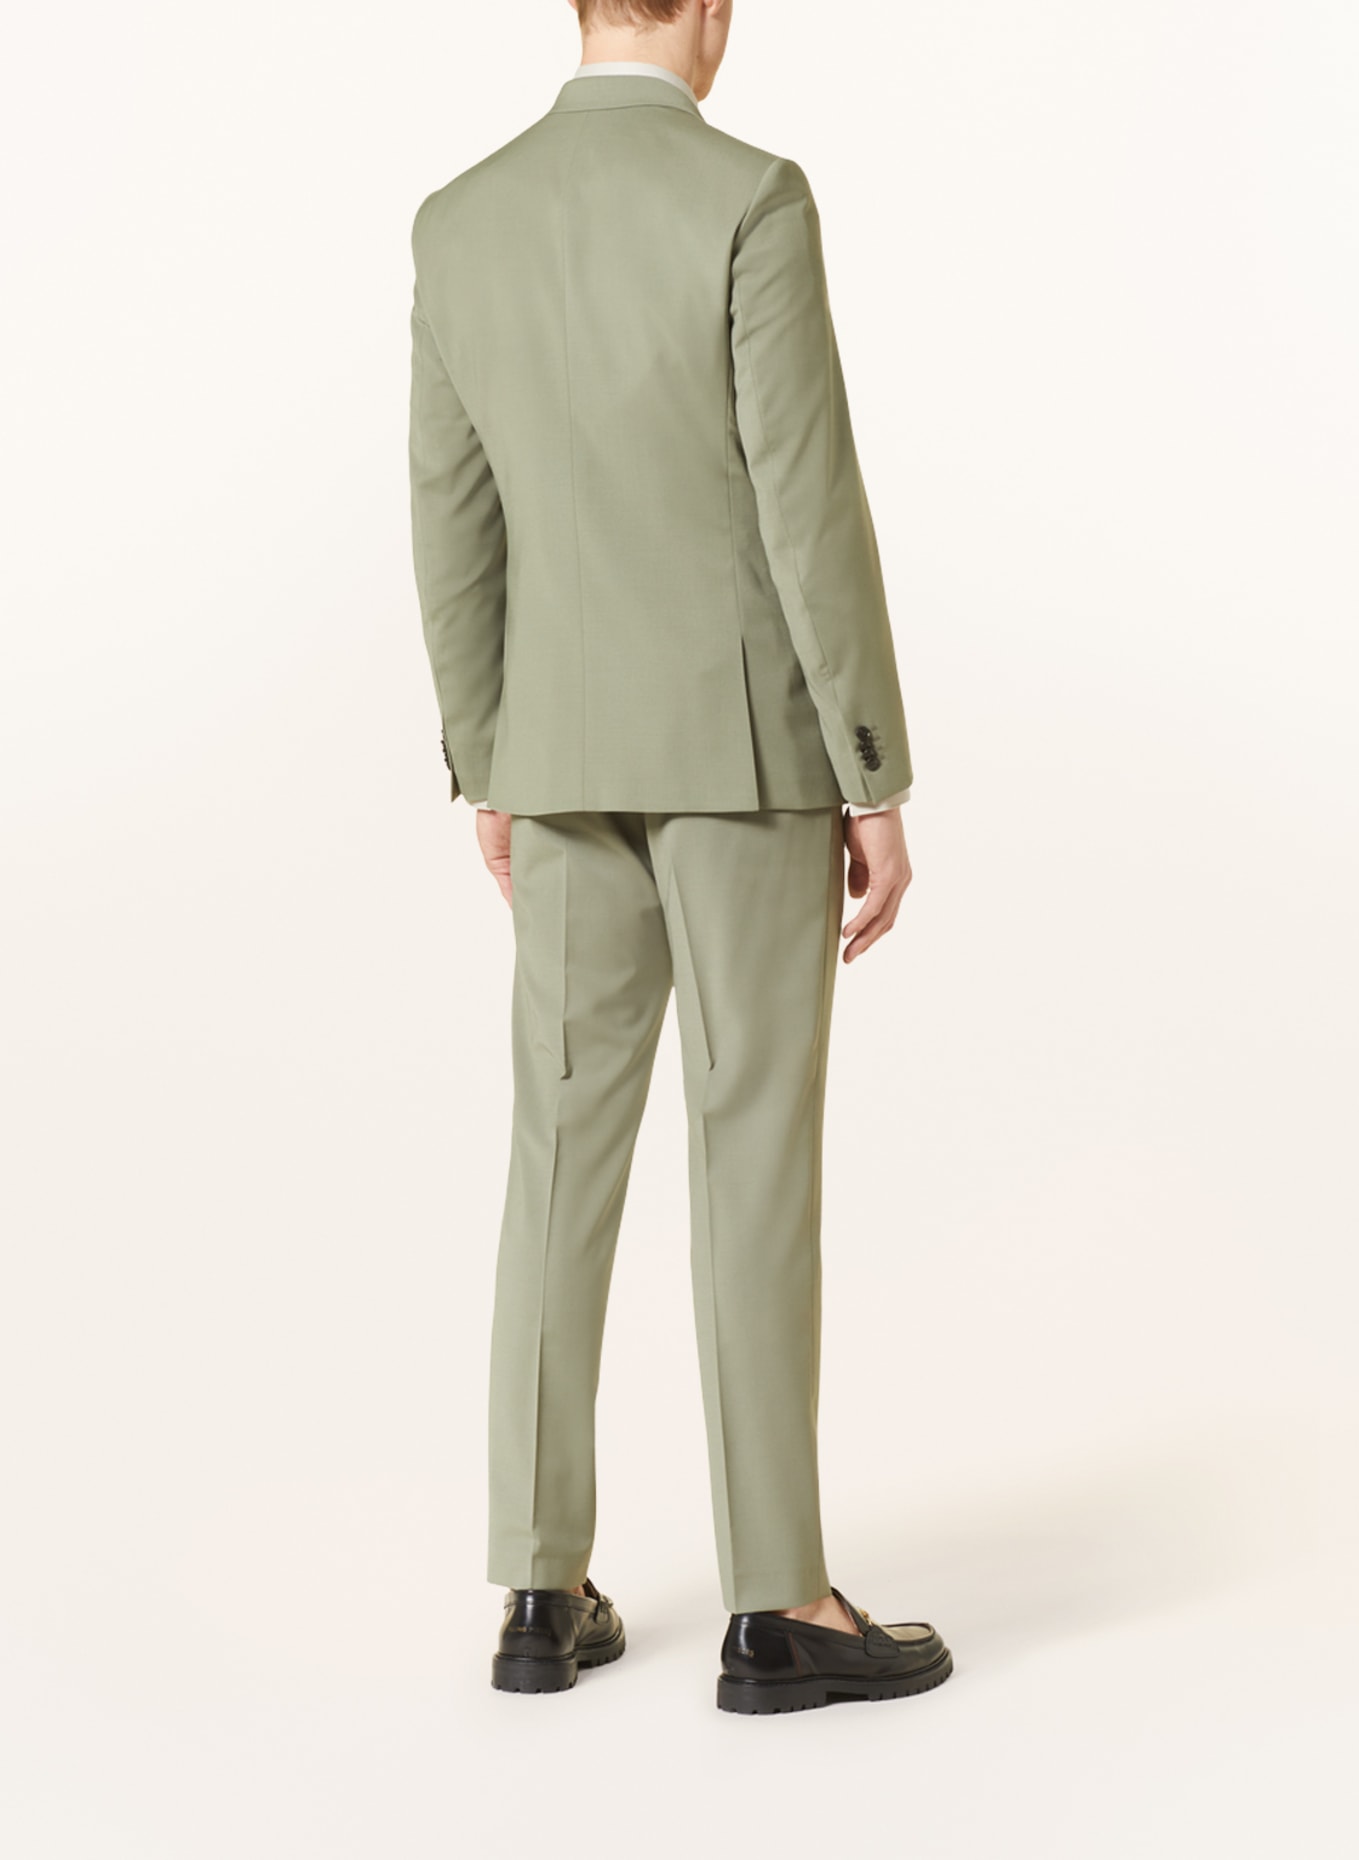 TIGER OF SWEDEN Suit jacket JERRETTS extra slim fit, Color: 46B Uniform Green (Image 3)